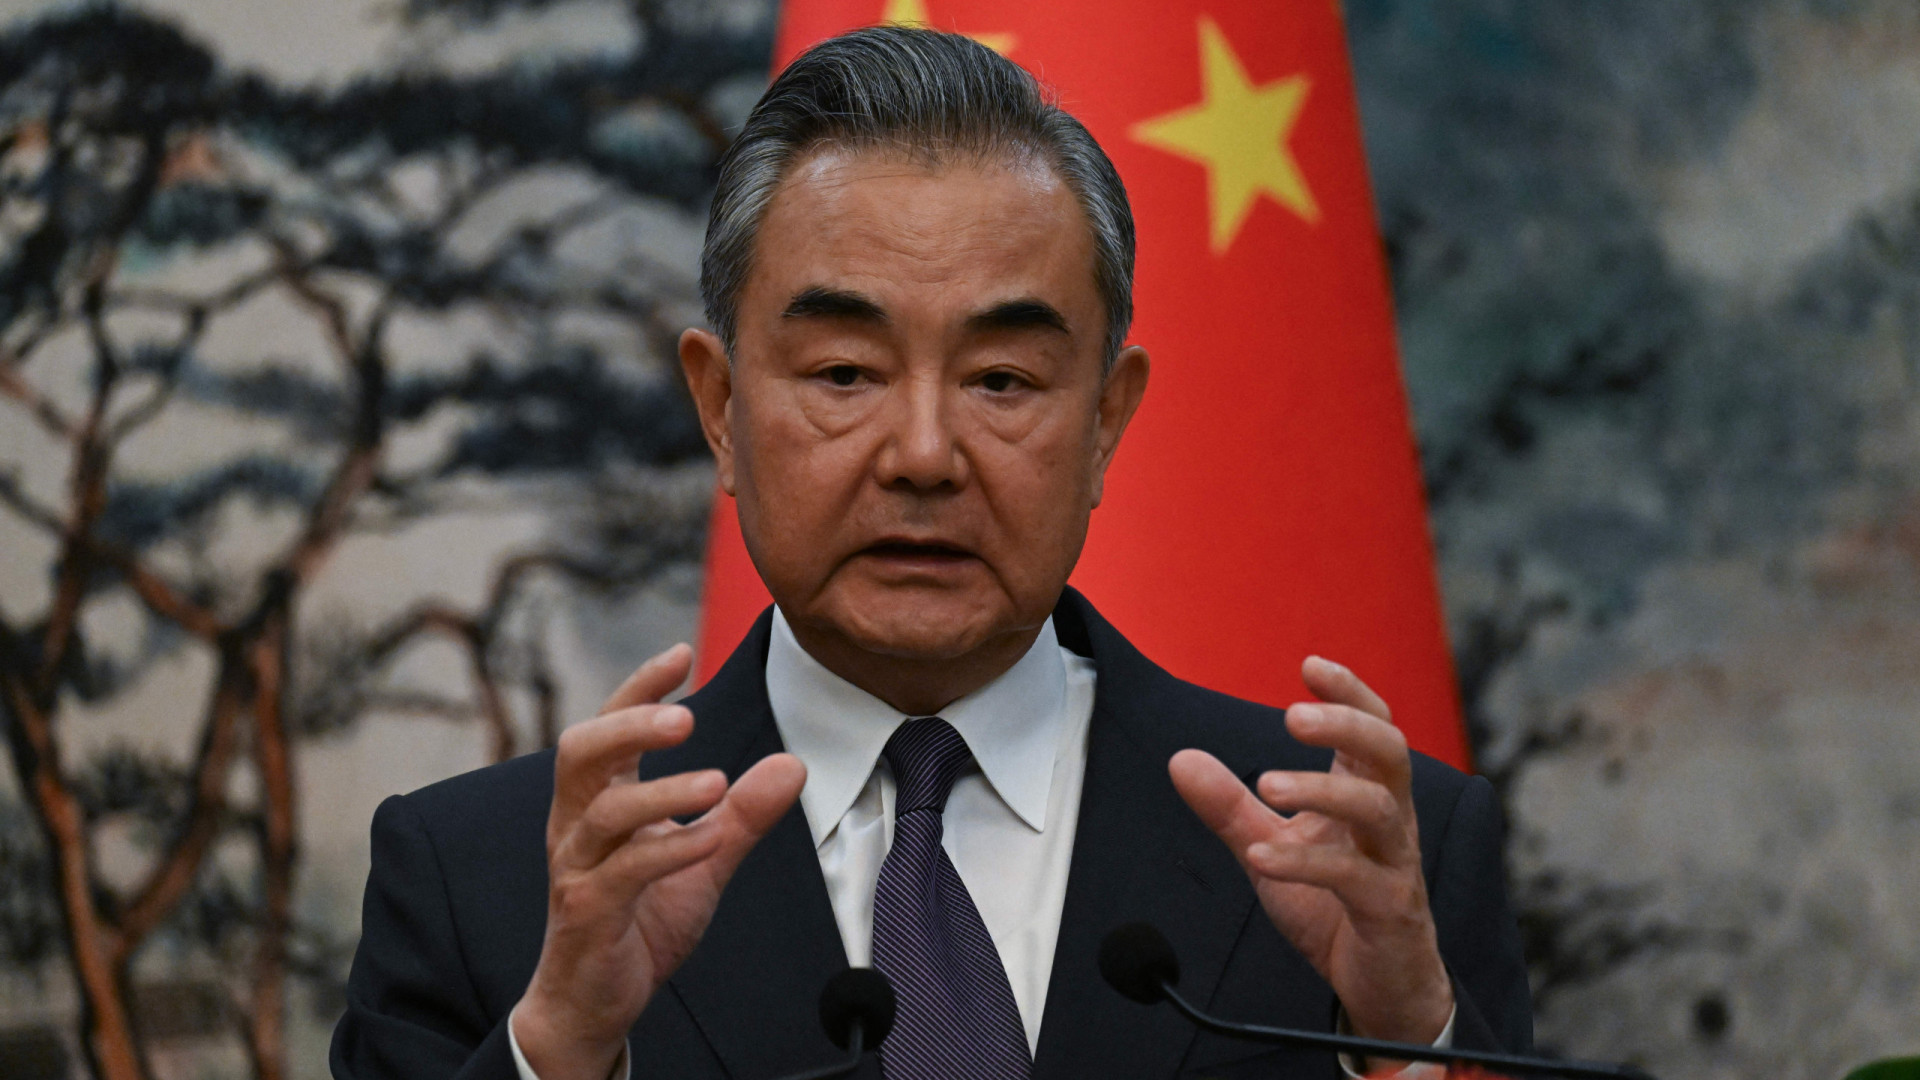 China critica EUA por uso abusivo de sanções (e não aceita "chantagens")